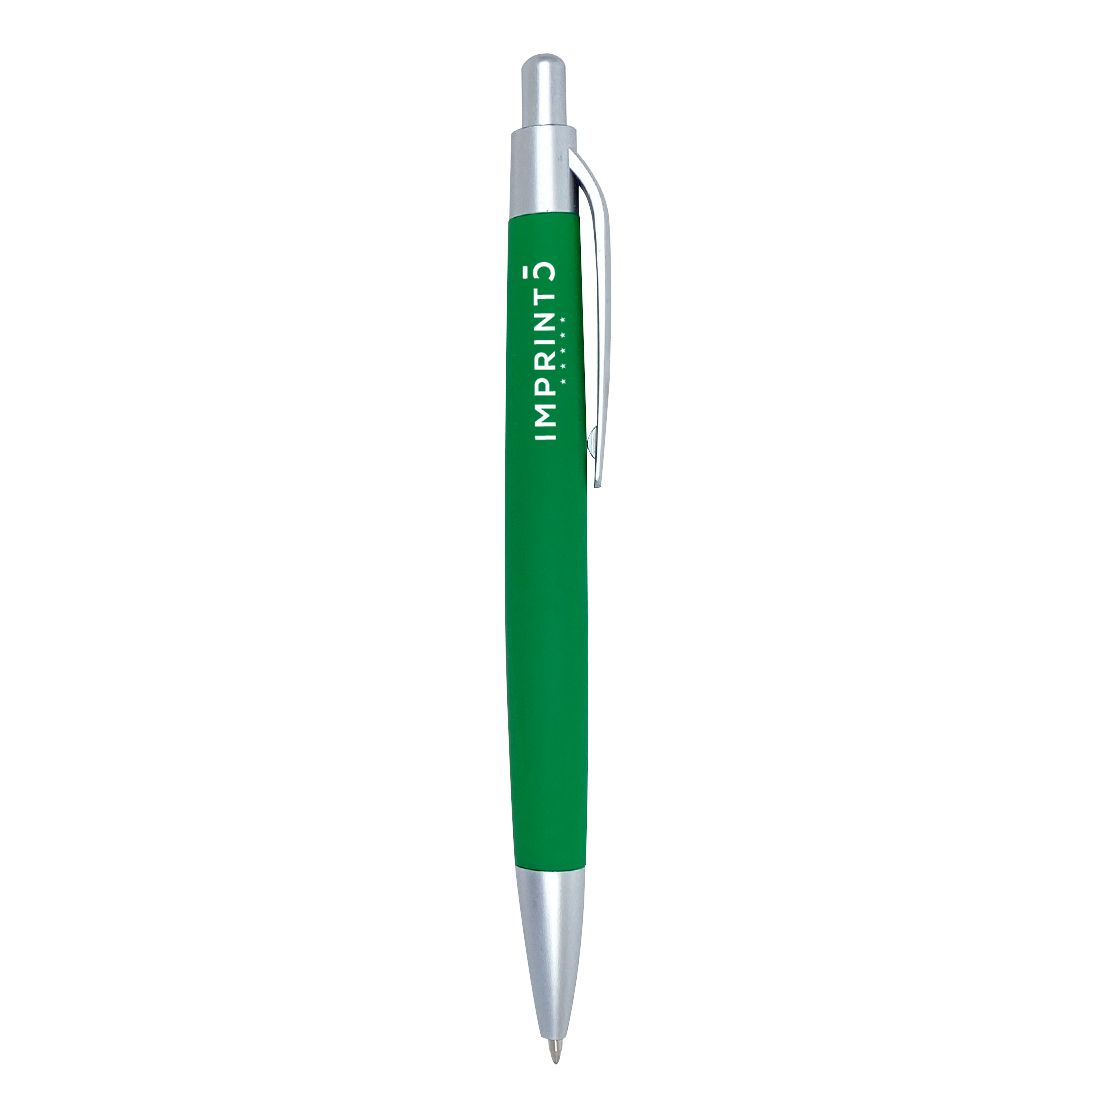 Προσαρμοσμένη χρωματιστή διαφημιστική πένα